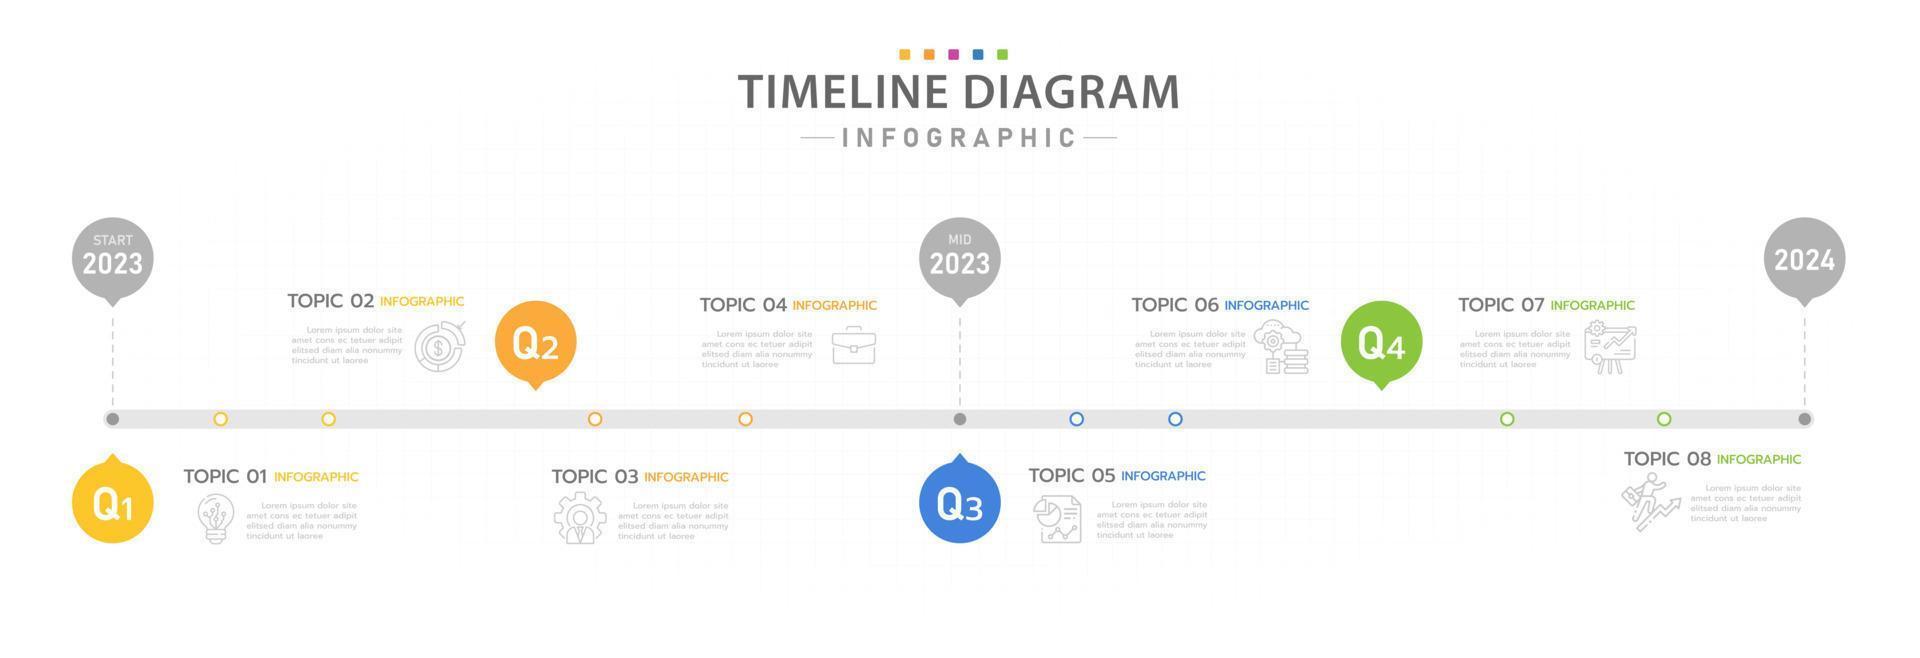 modèle d'infographie pour les entreprises. Calendrier de diagramme de chronologie moderne en 8 étapes avec 4 sujets de trimestre, infographie vectorielle de présentation. vecteur